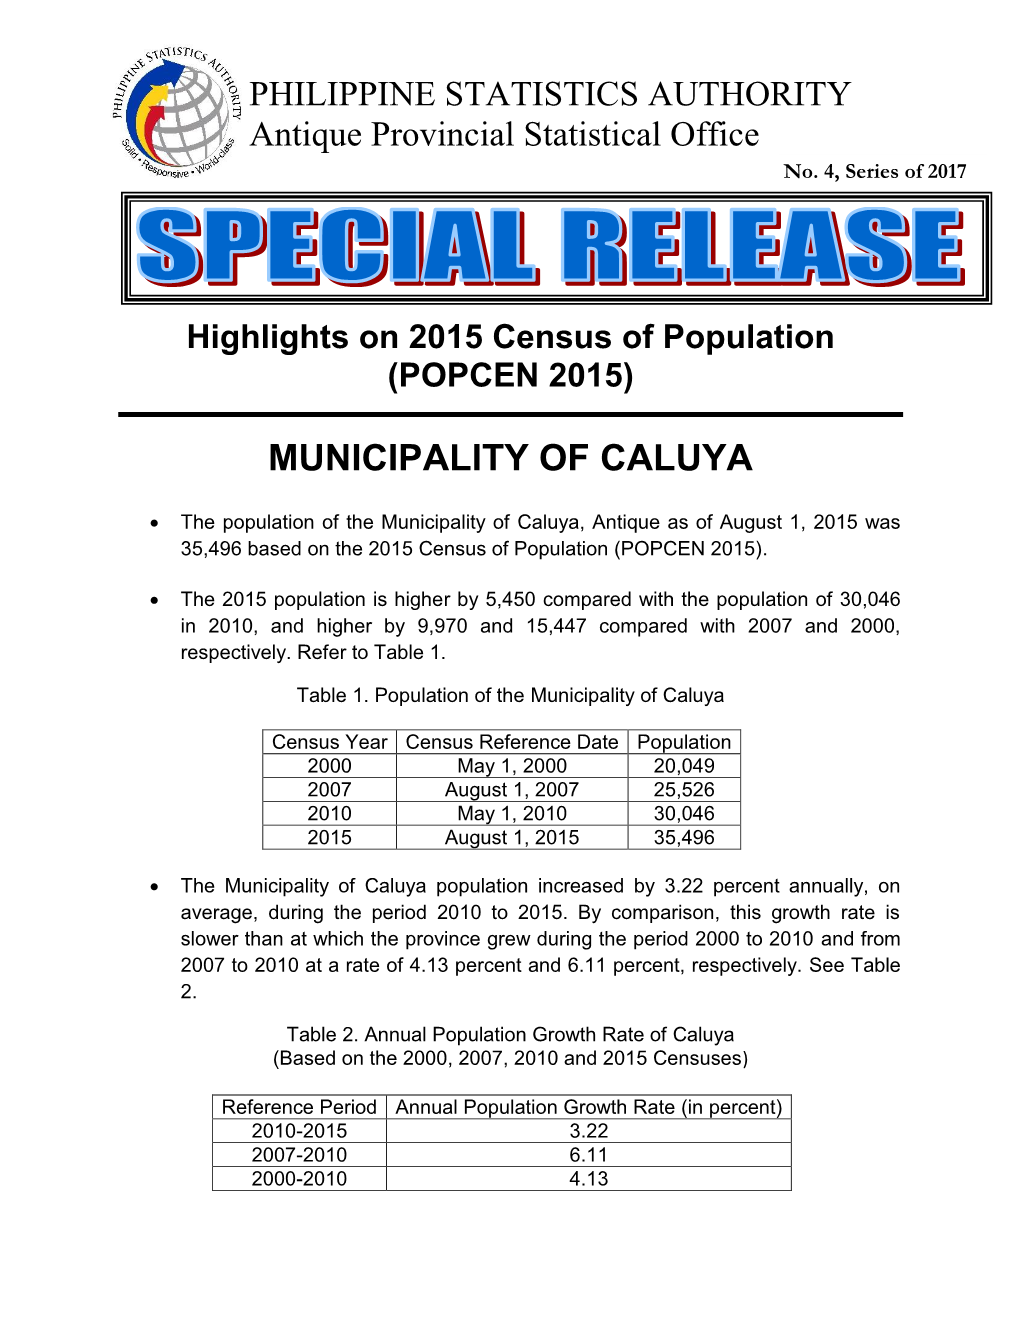 Municipality of Caluya